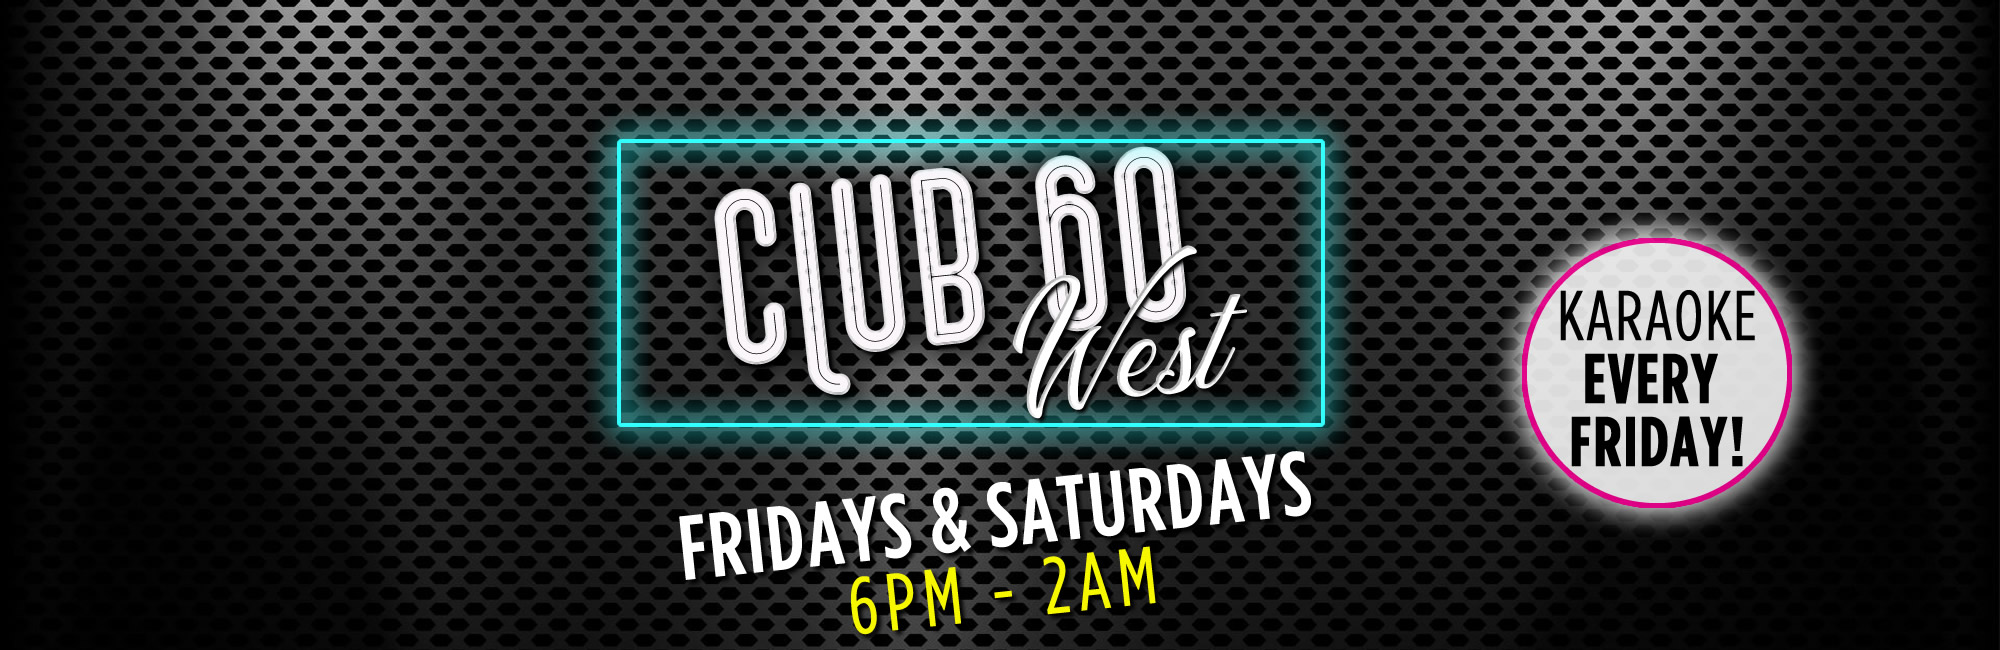 Club 60 West 